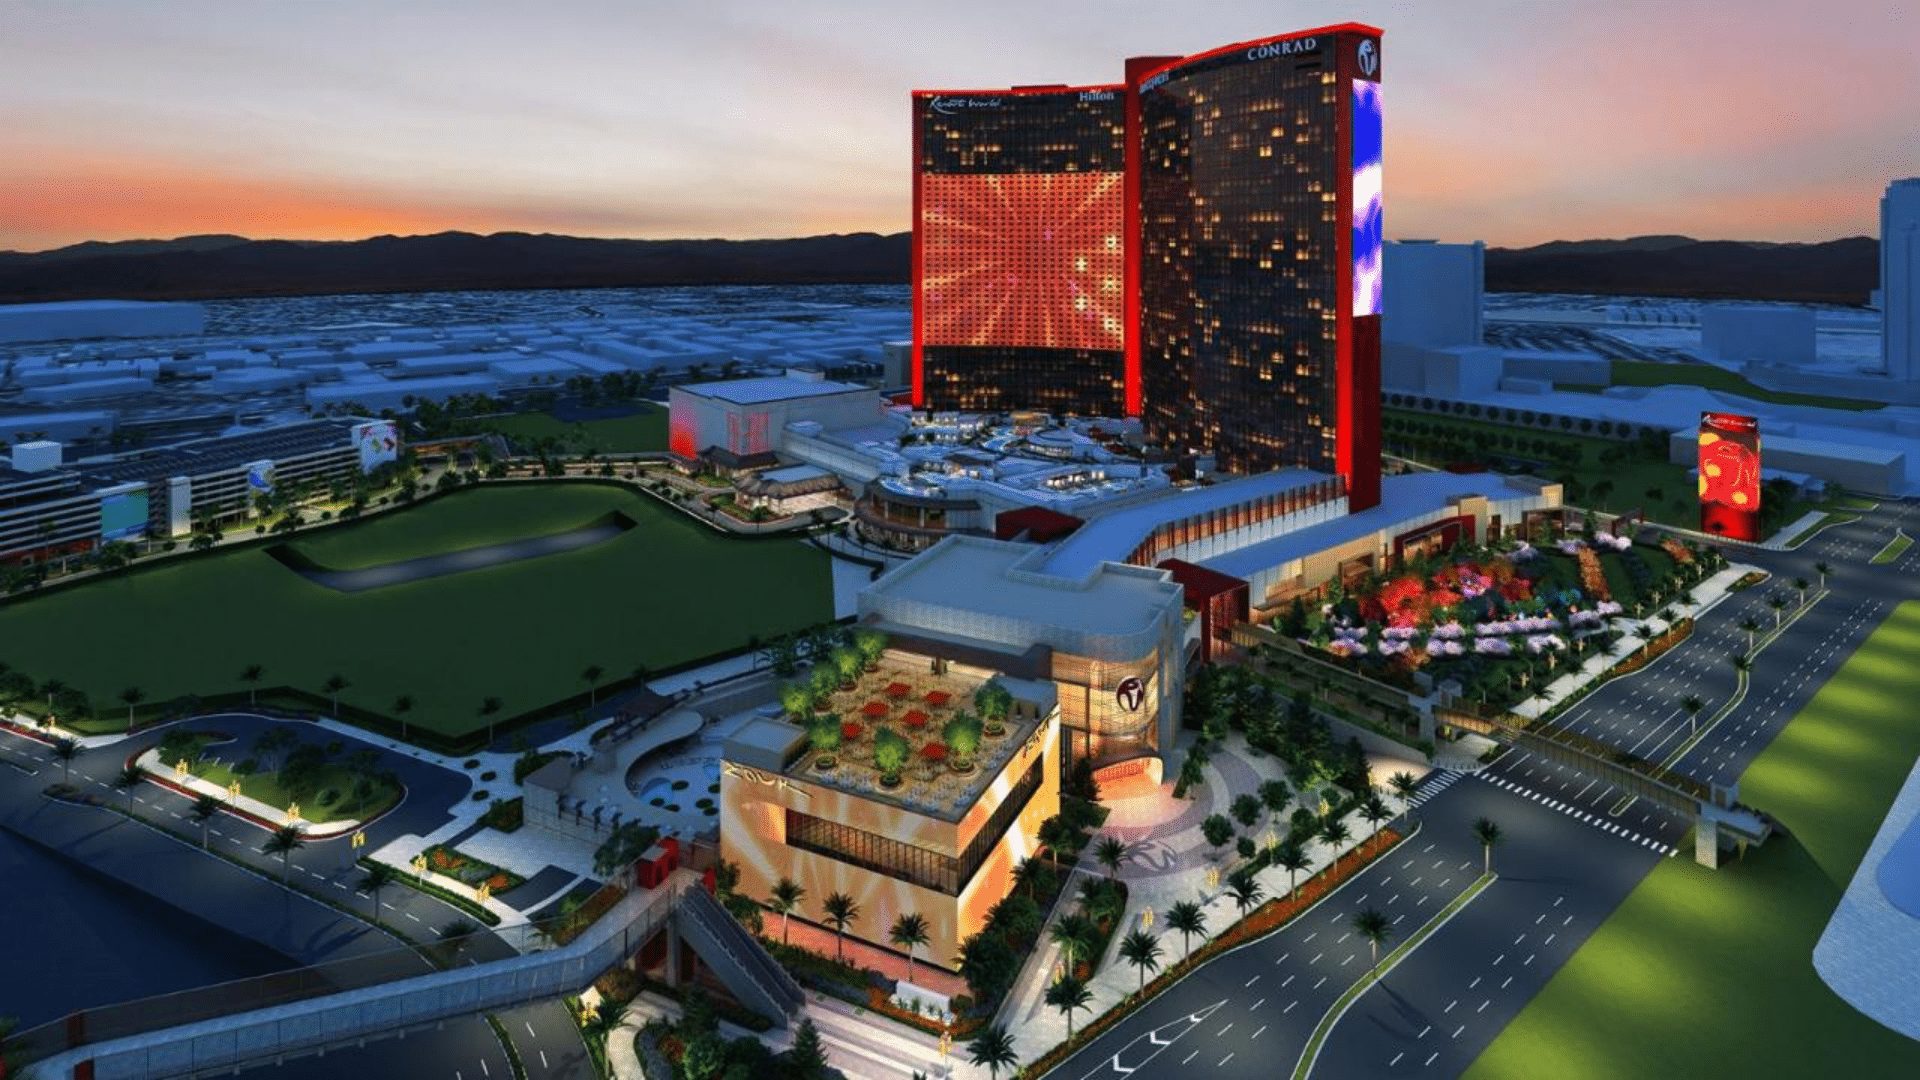 Hôtel Hilton à Las Vegas